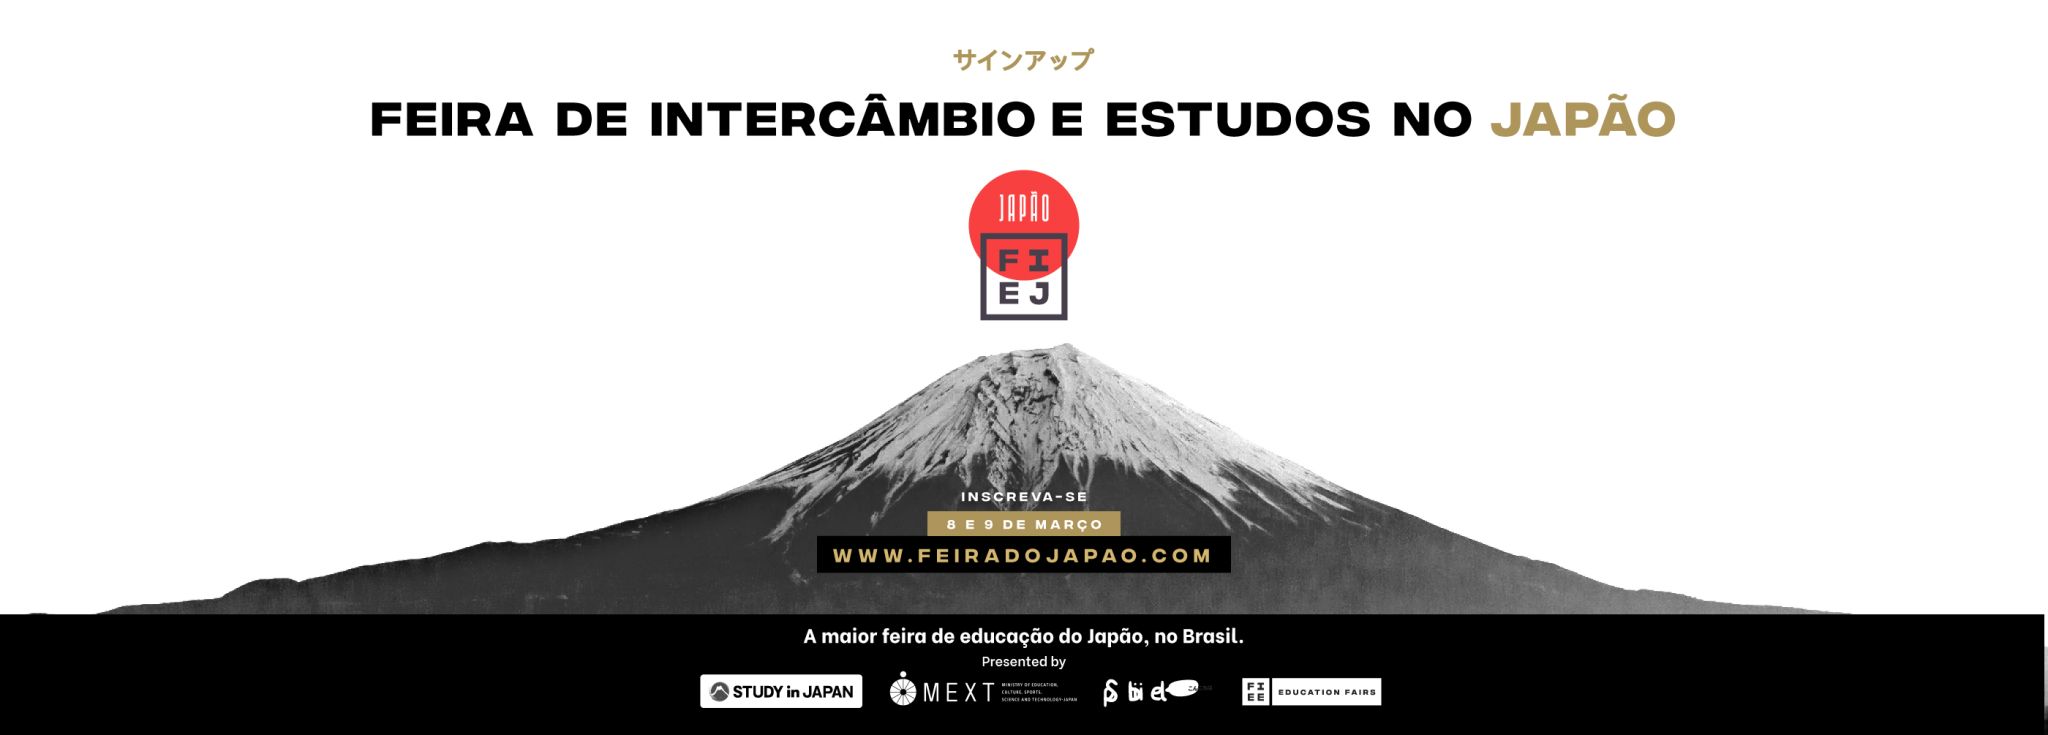 Japan House São Paulo na Feira de Intercâmbio e Estudos no Japão